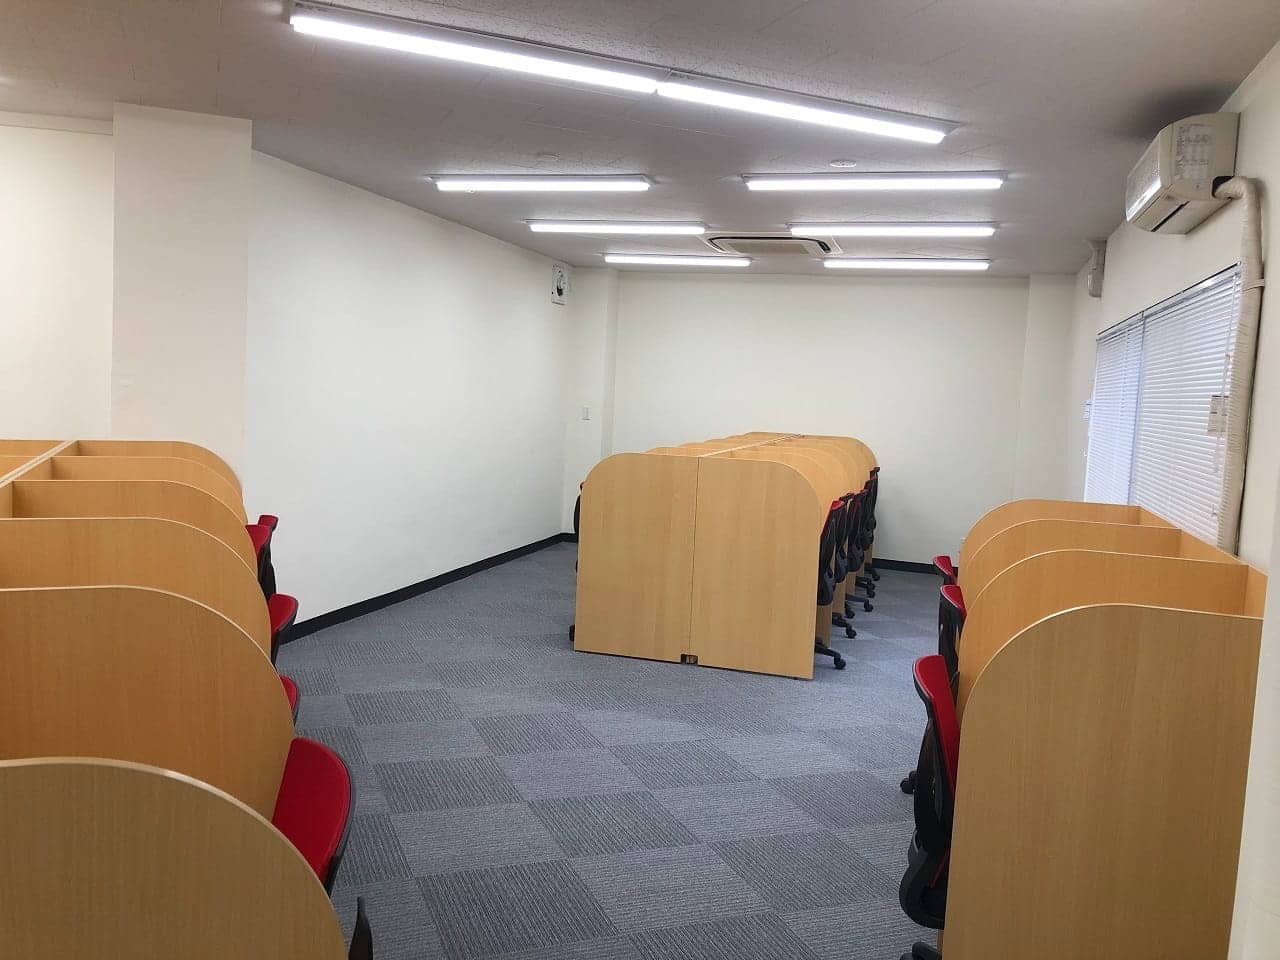 小田原市の自習室 自習が出来る図書館や公共施設を紹介